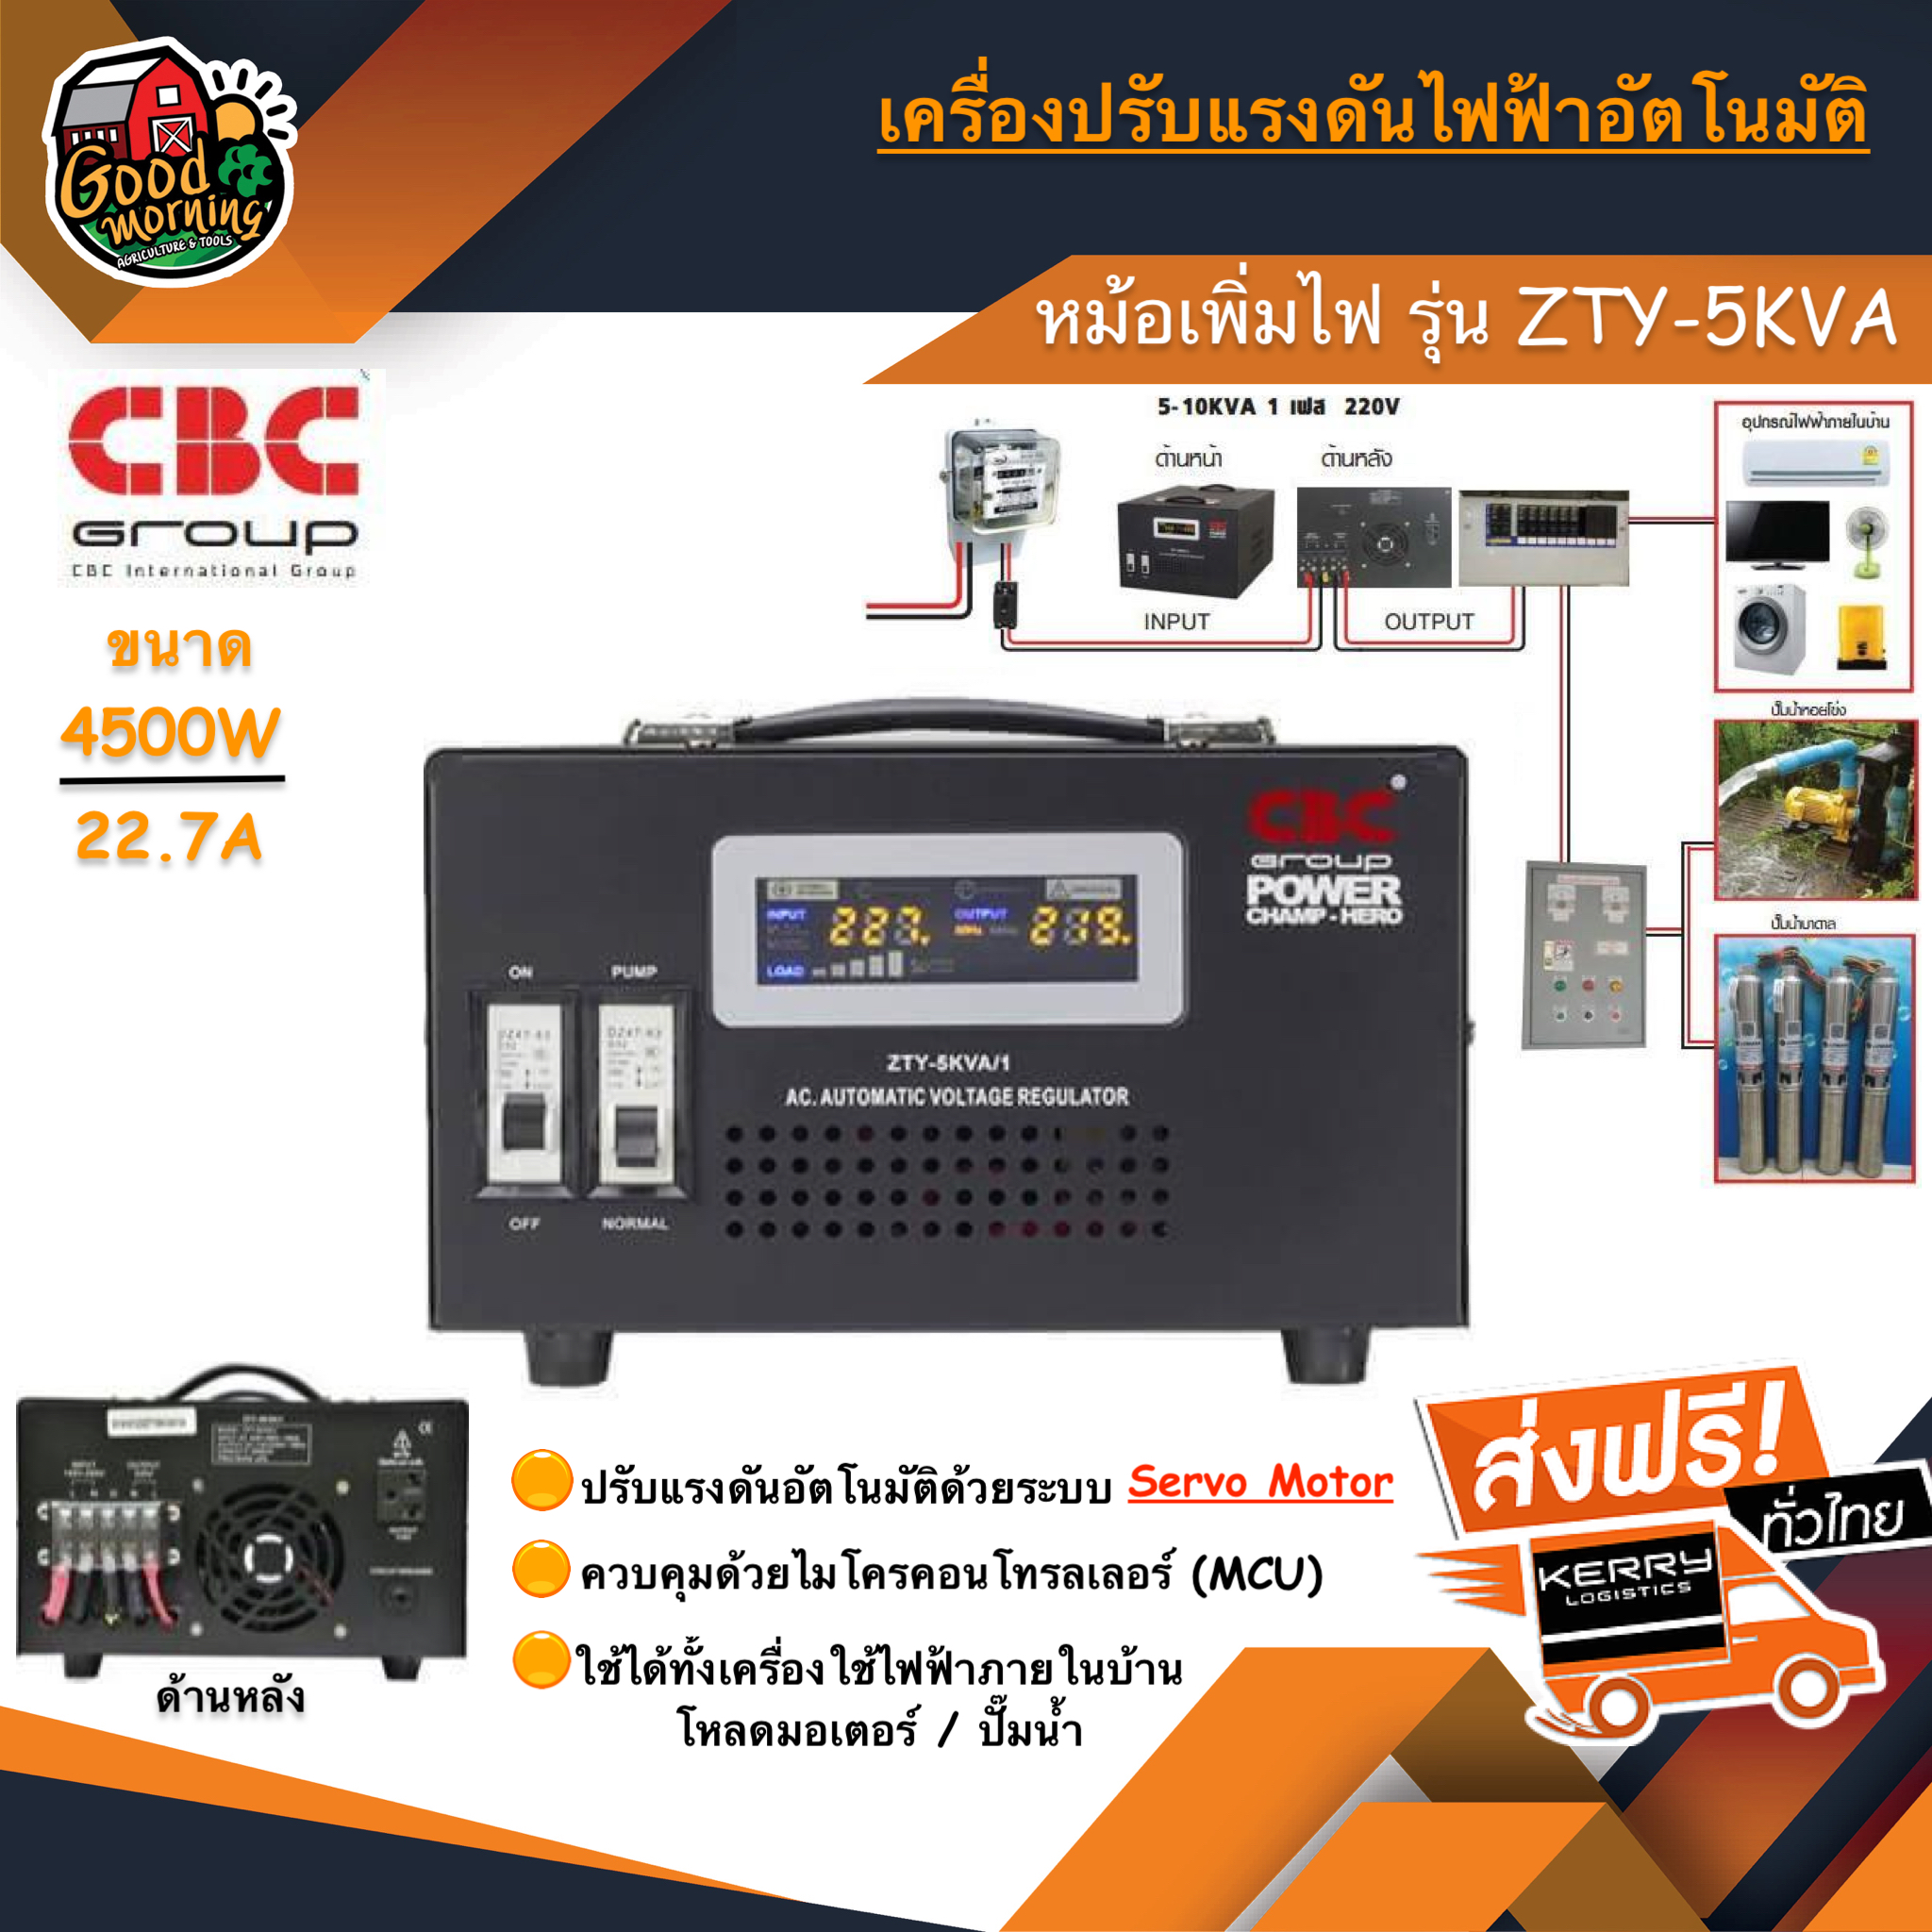 เครื่องปรับแรงดันไฟฟ้า CBC ZTY-5KVA ขนาด 4500W 22.7A หม้อเพิ่มไฟ อัตโนมัติ ปั๊ม/มอเตอร์ ปั๊ม3HP เครื่องปรับแรงดัน กันไฟตก ไฟกระชาก ส่งฟรีทั่วไทย เก็บเงินปลายทาง